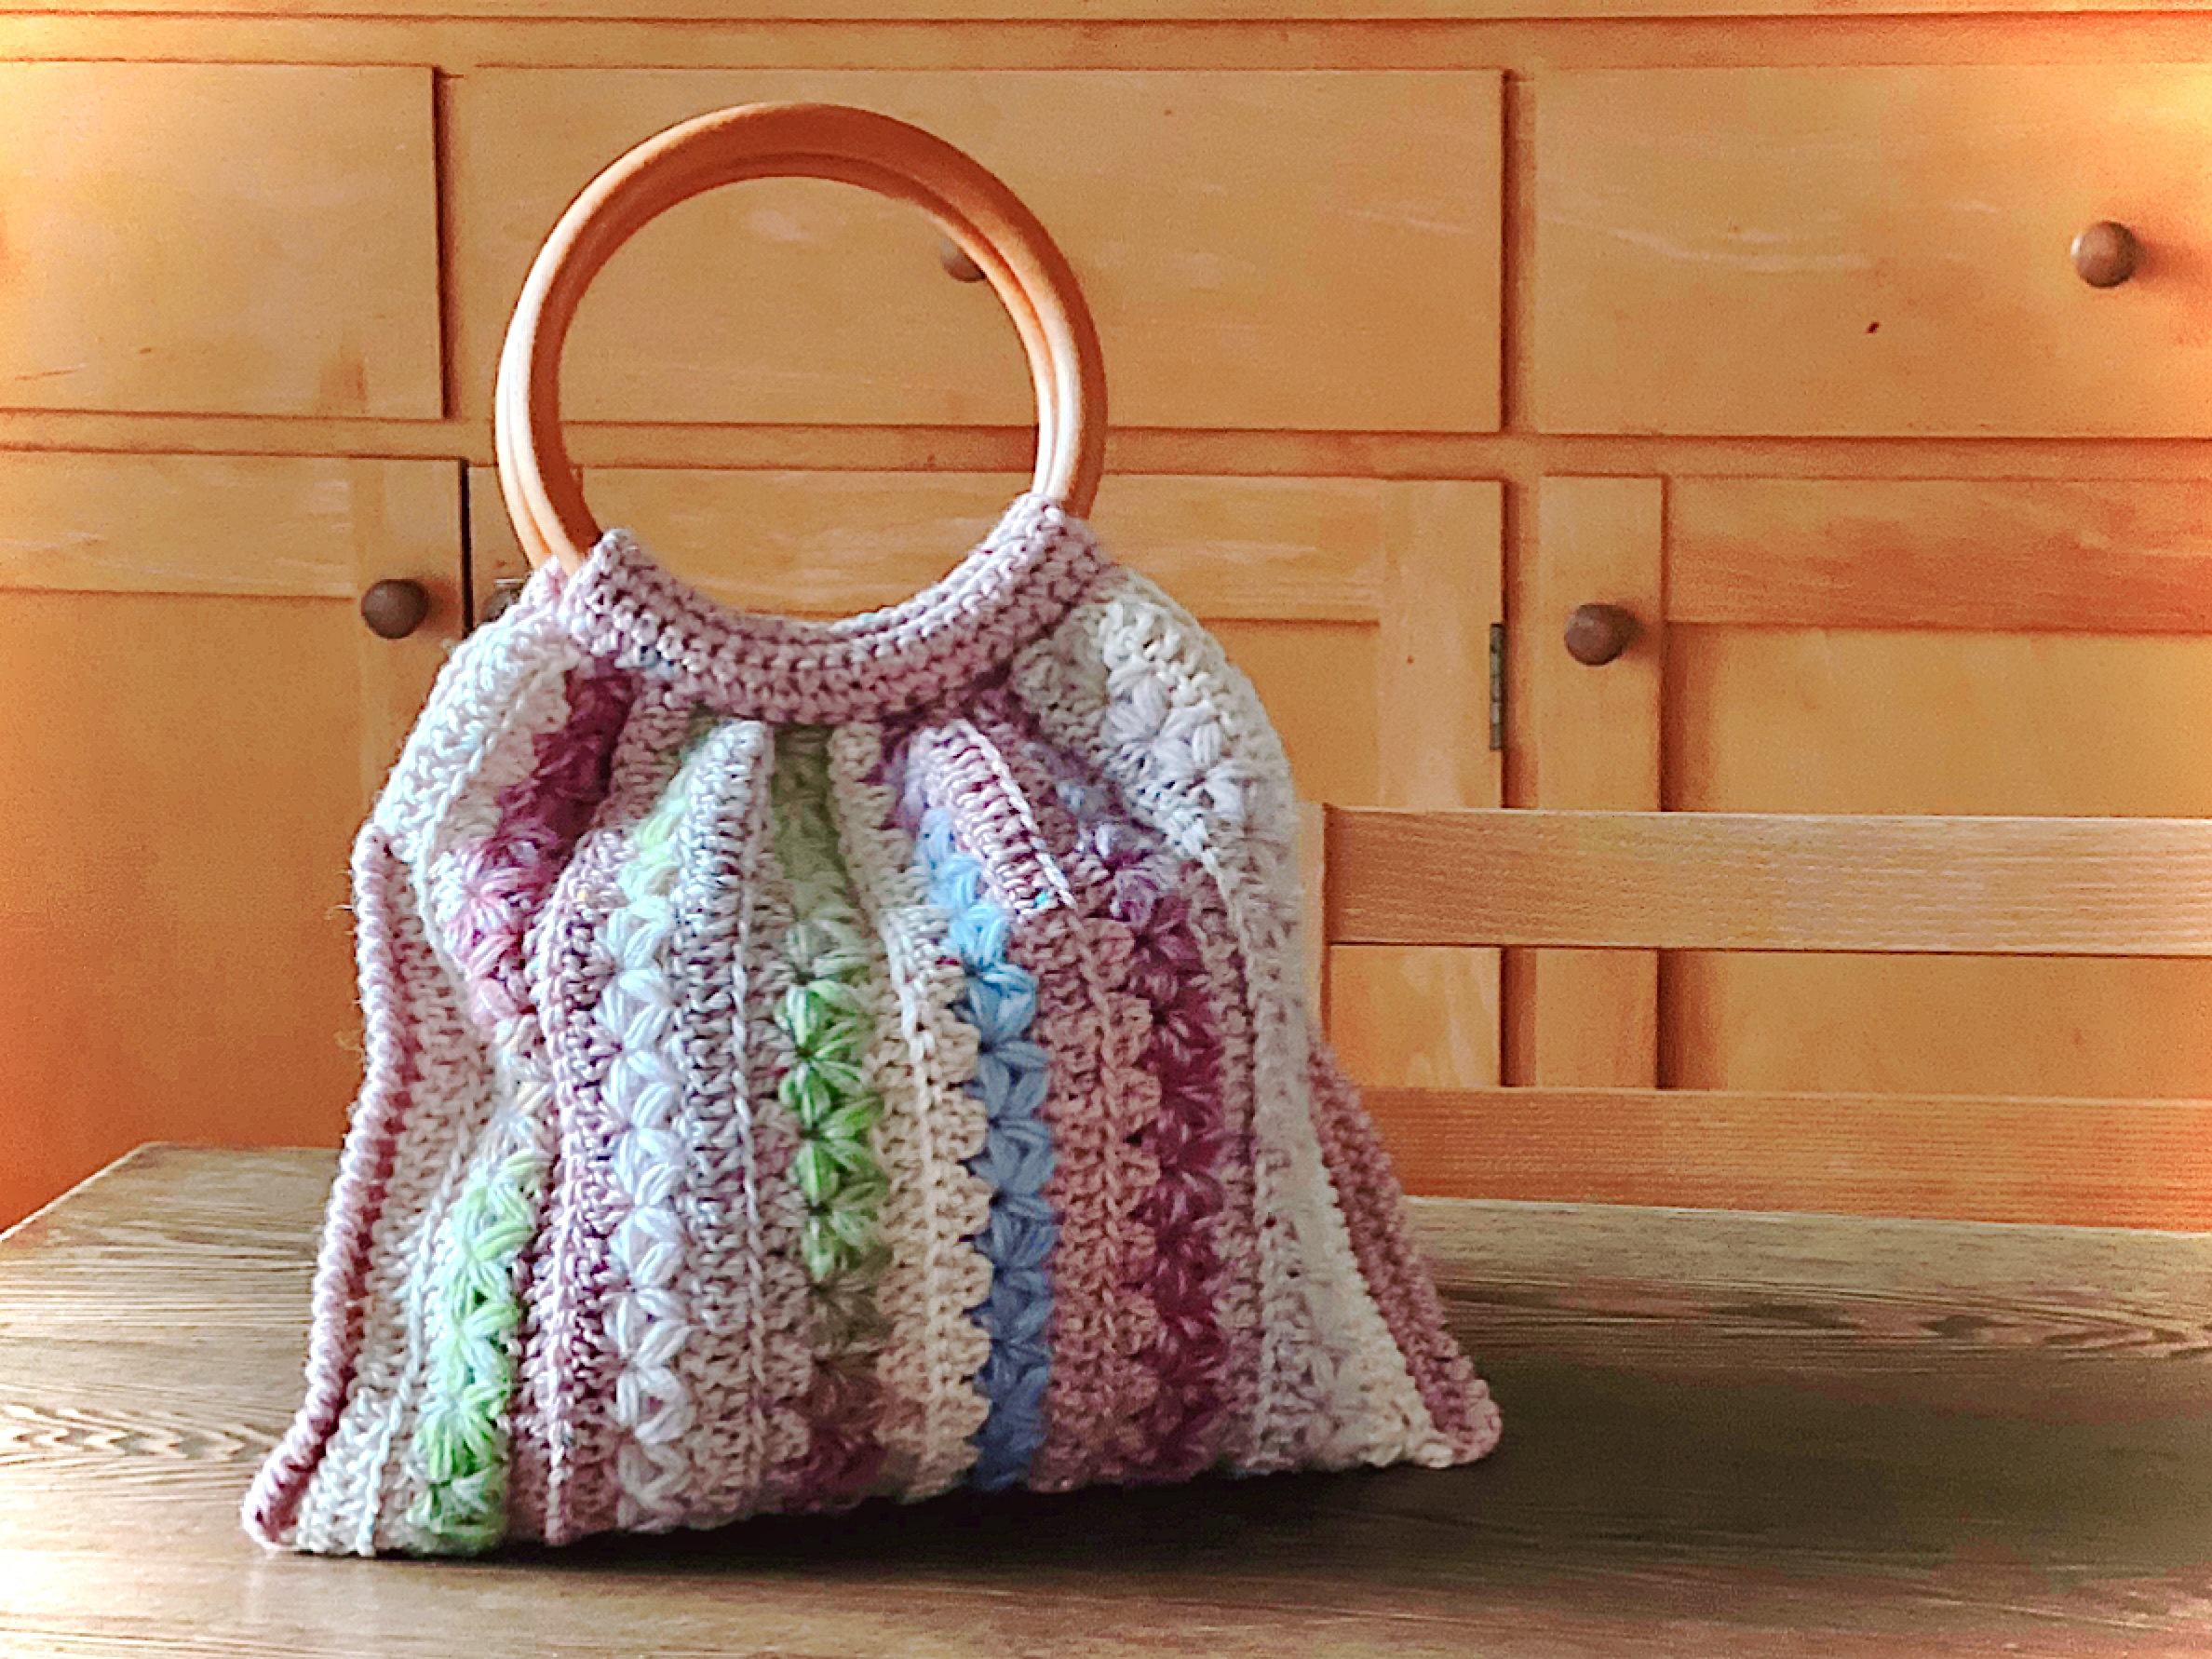 はじめてでもできる】おしゃれで可愛いかぎ針編みバッグの作り方 | FANTIST